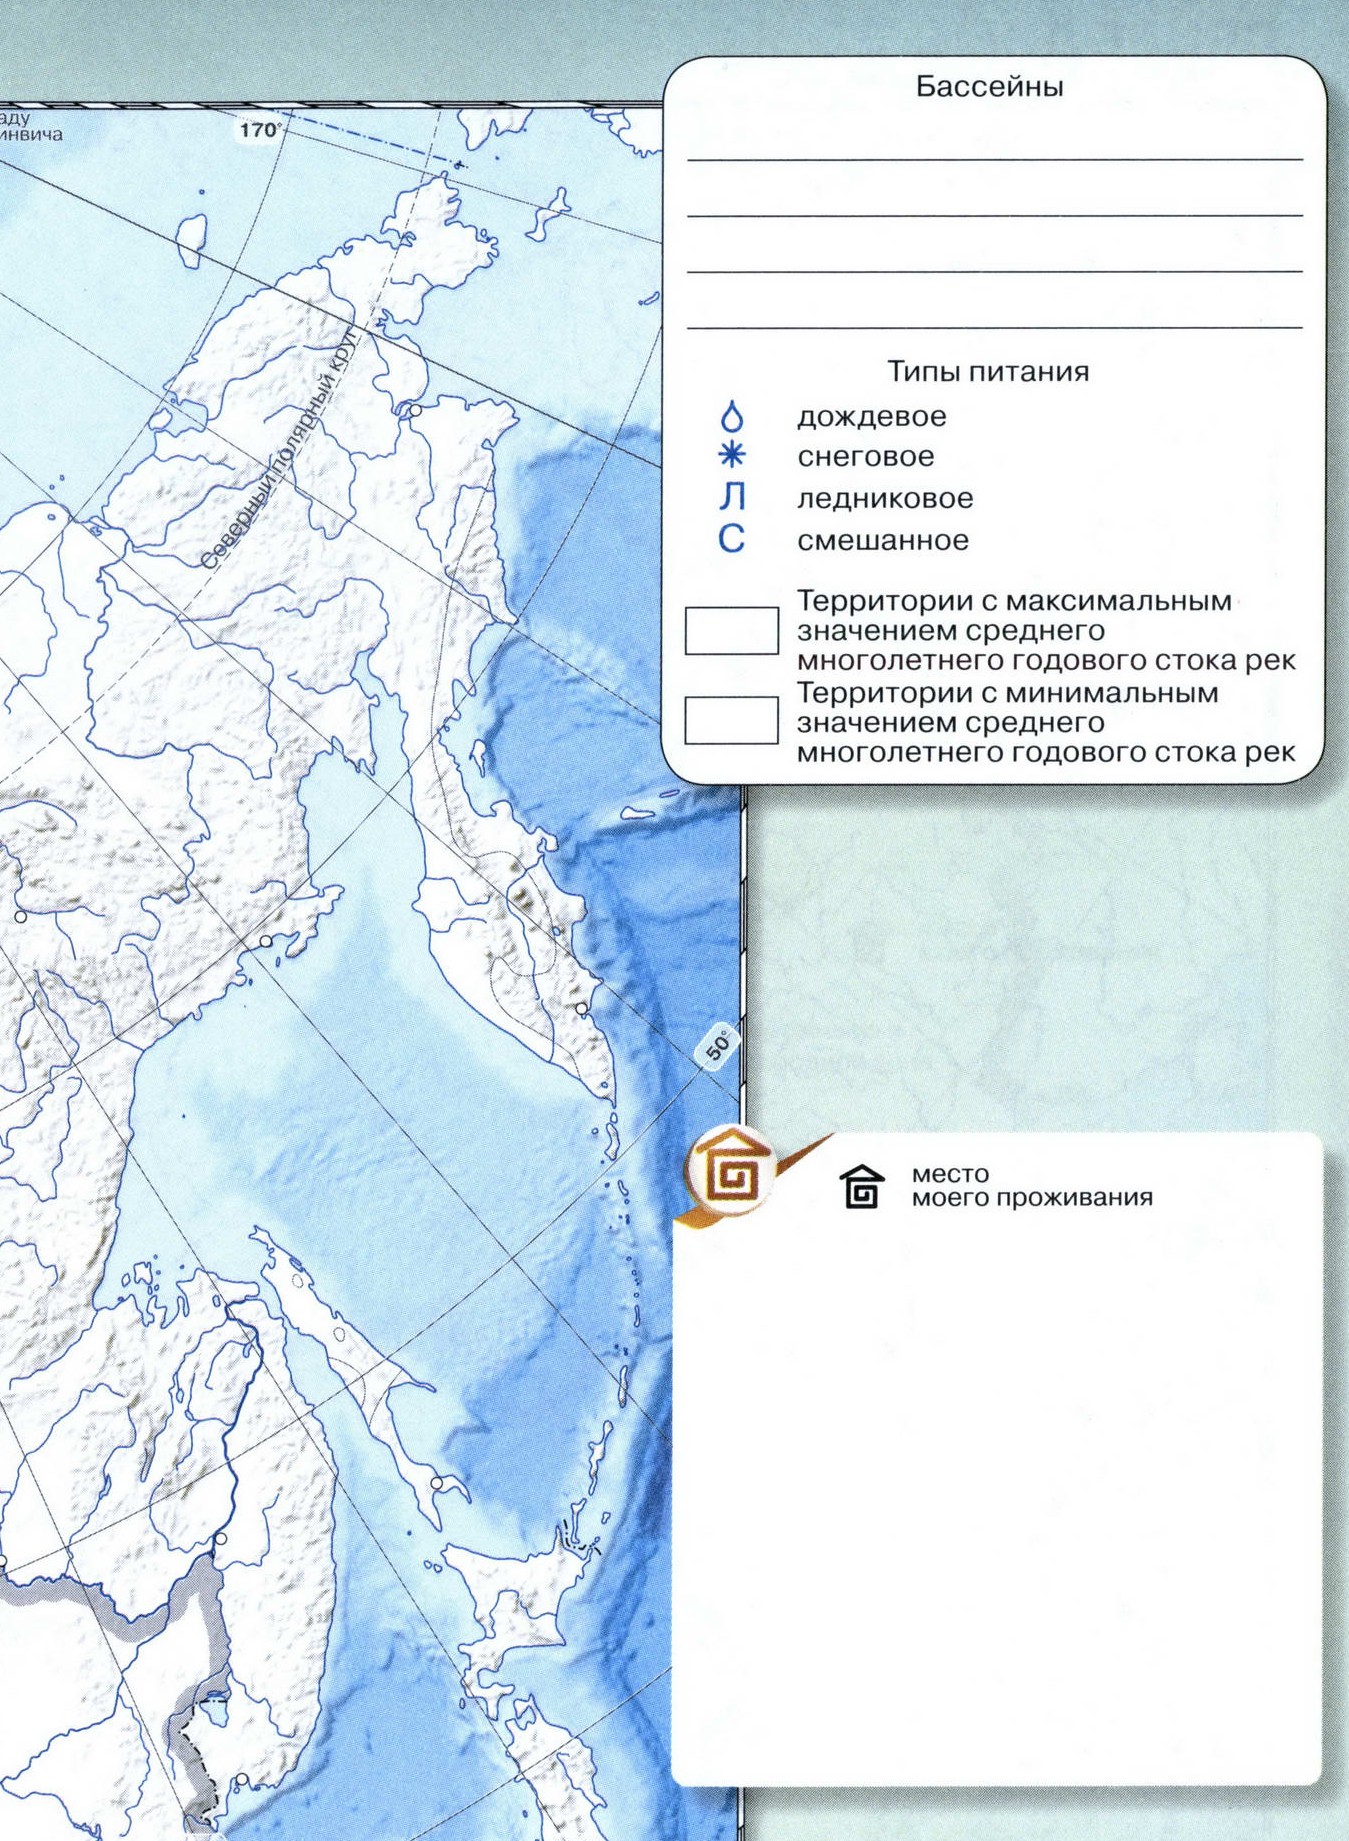 Внутренние воды и моря России Атлас 8 класс контурные карты география Сферы